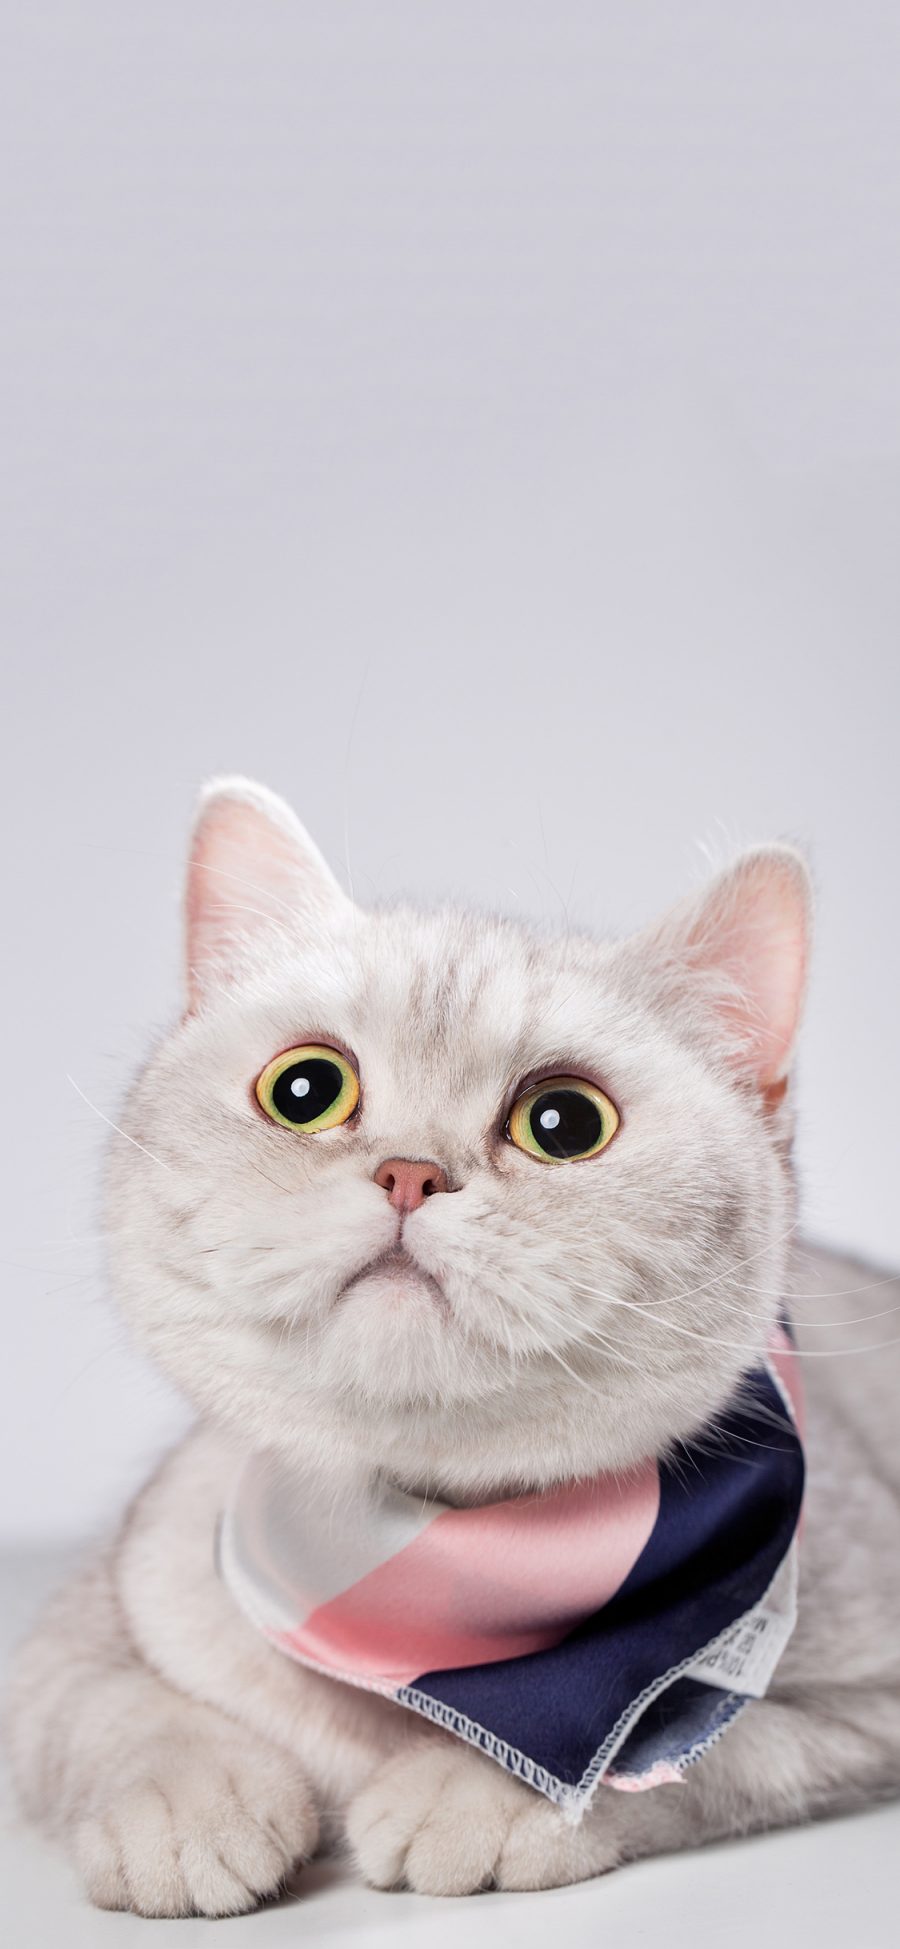 [2436×1125]猫咪 喵星人 宠物 大眼睛 可爱 苹果手机壁纸图片